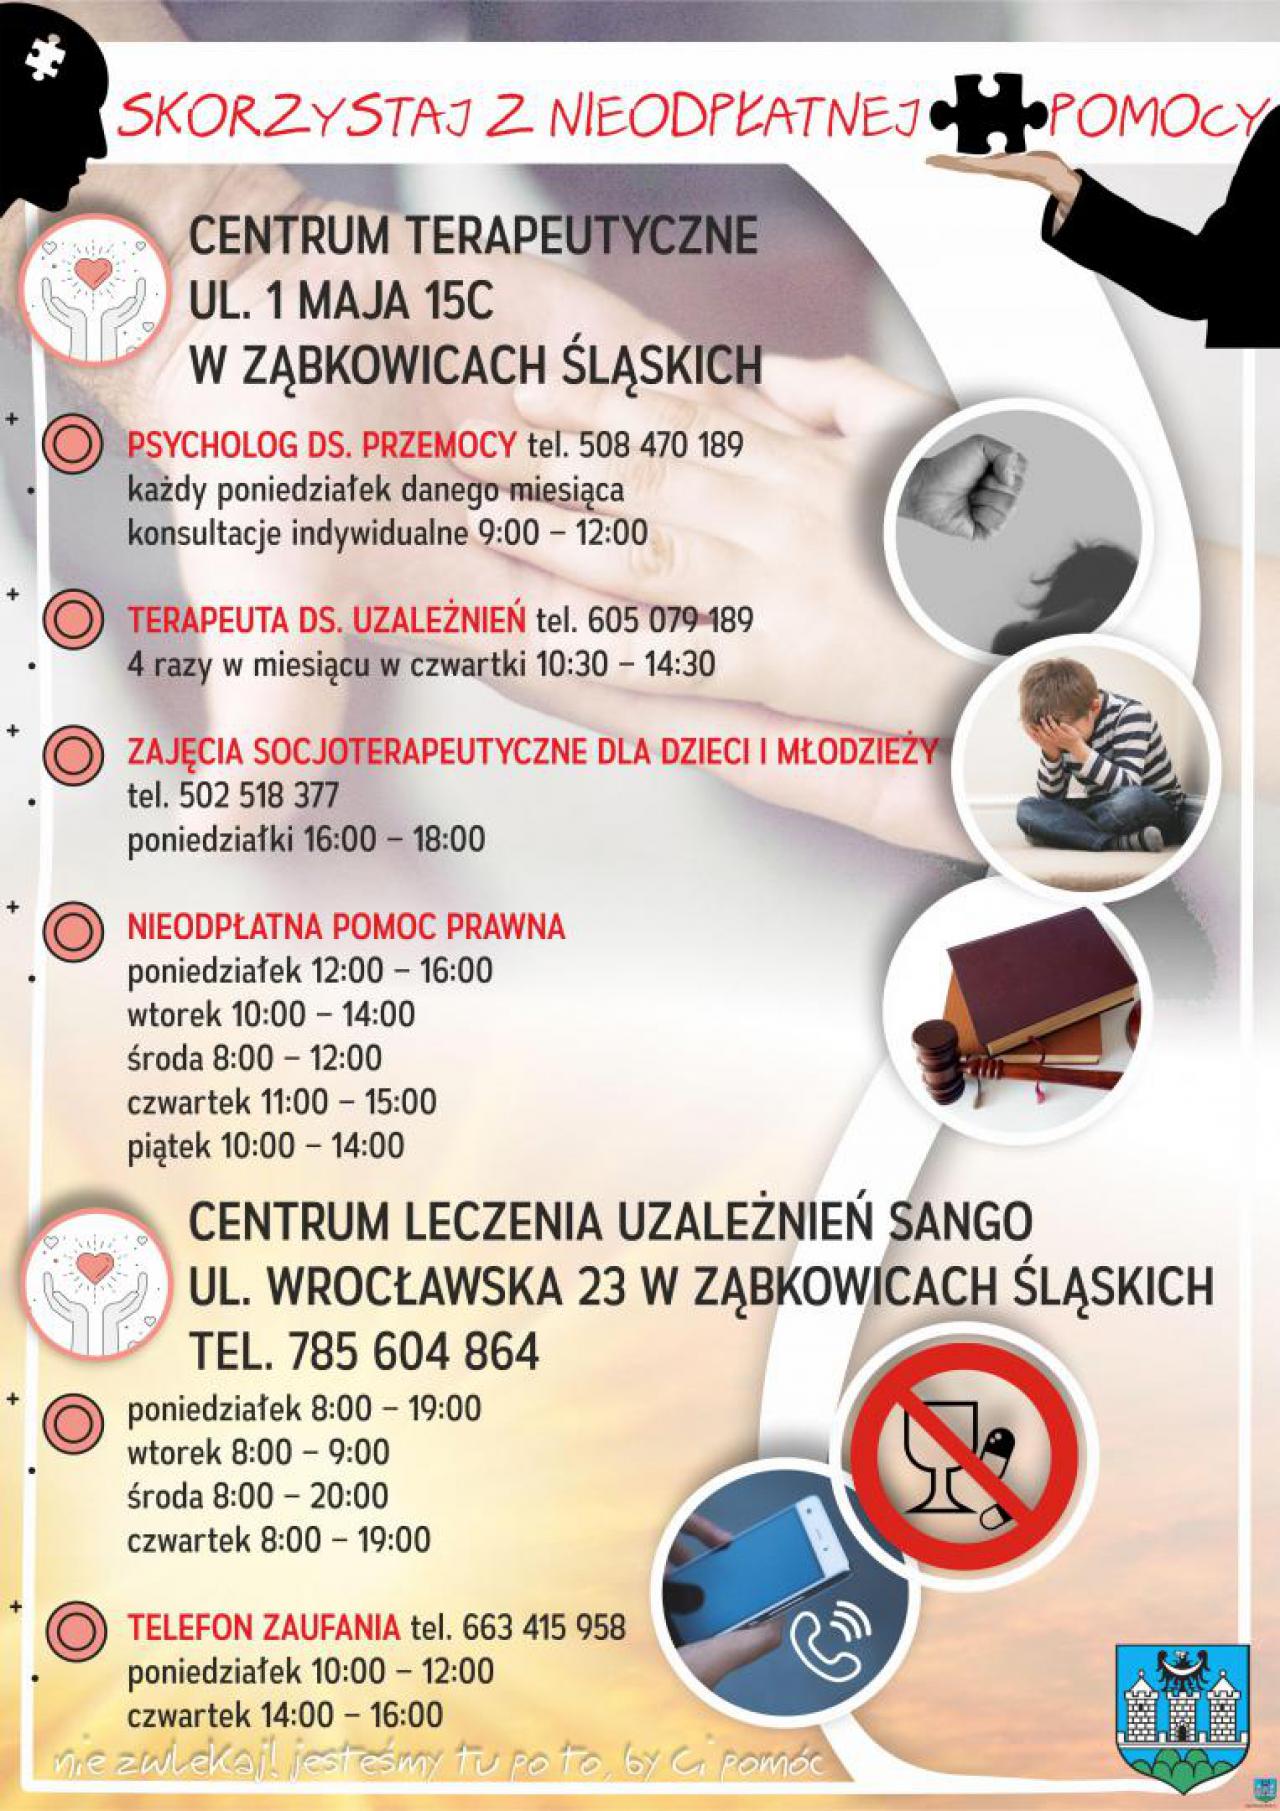 Bezpłatna pomoc prawna i psychologiczna w gminie Ząbkowice Śląskie